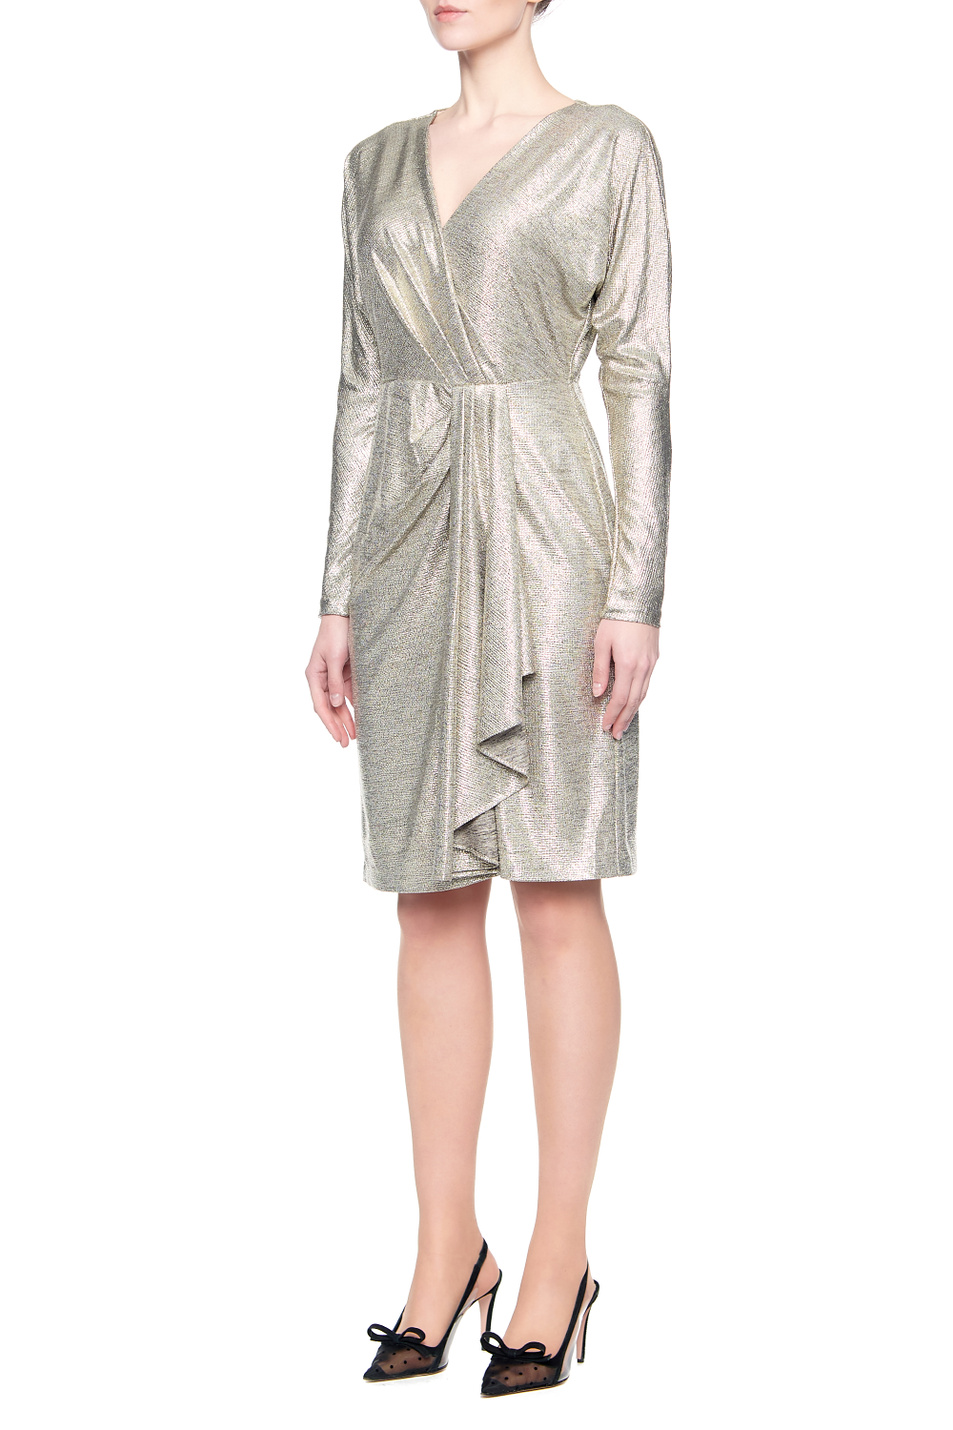 Lauren Коктейльное платье LYNNA с эффектом металлик (цвет ), артикул 253816865001 | Фото 3